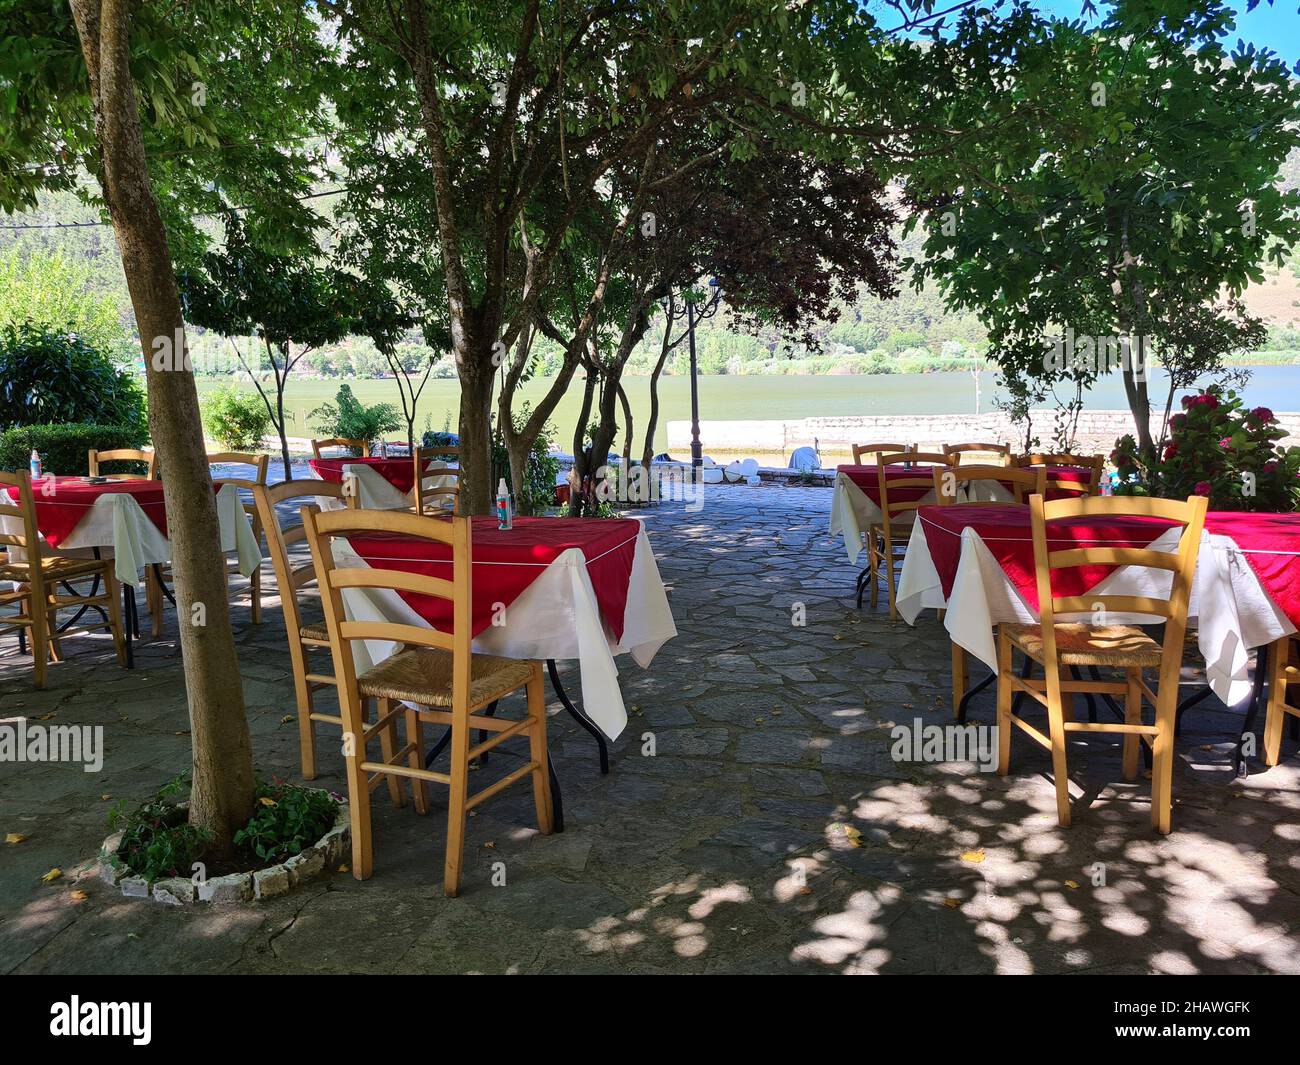 Ioannina, Griechenland - 27. Juni 2021: Tische mit Spray zur Desinfektion während der Coronapandemie im Gartenbereich eines Restaurants Stockfoto